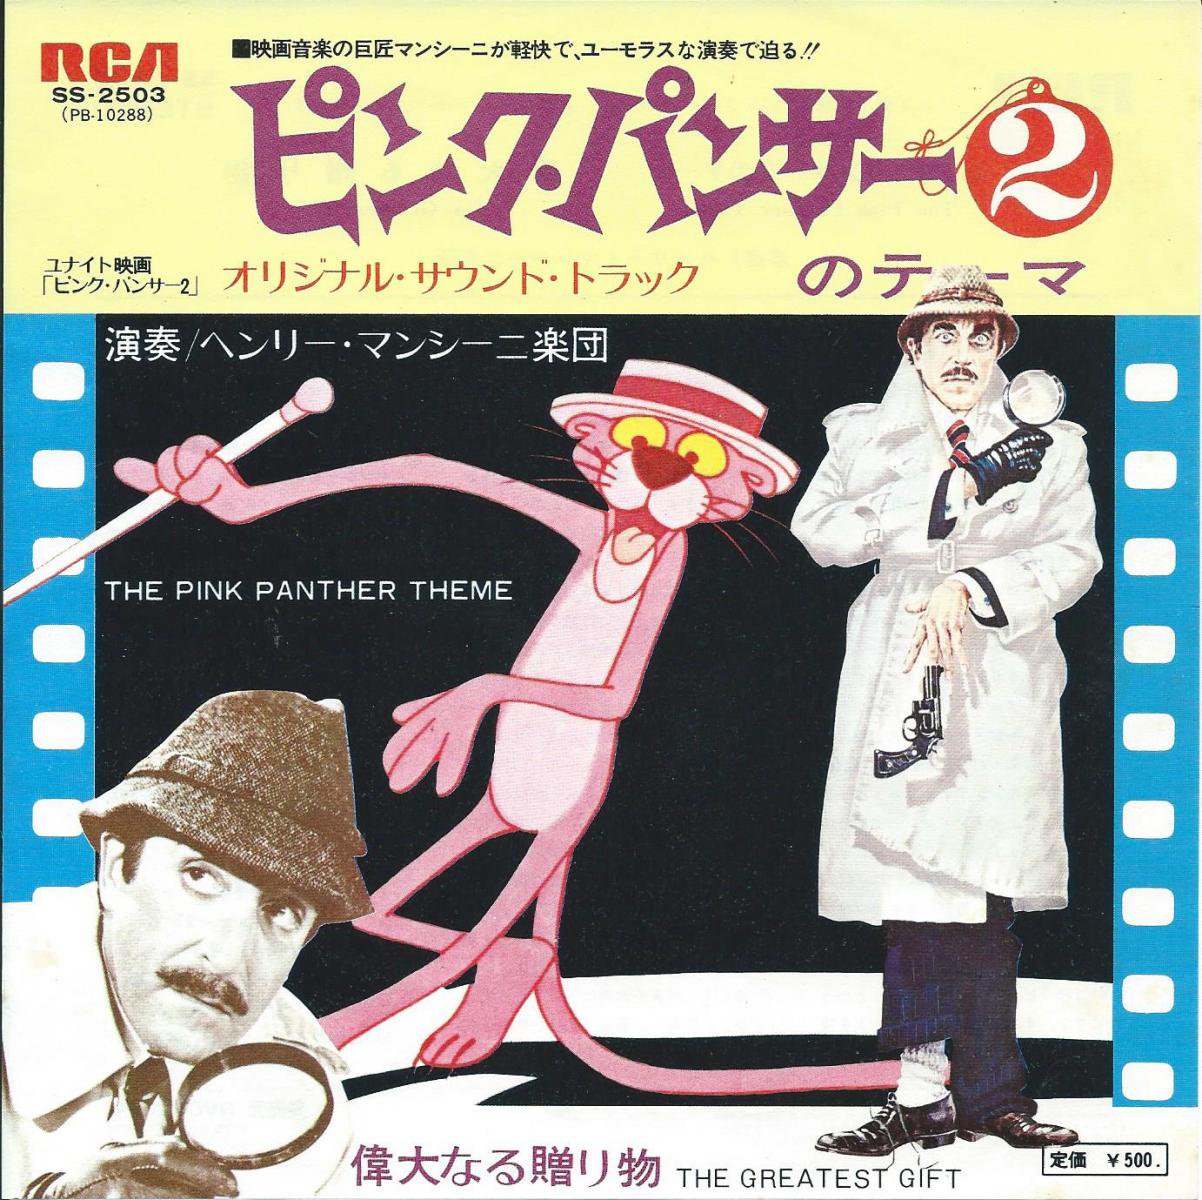 ヘンリー・マンシーニ楽団 HENRY MANCINI / ピンク・パンサー2のテーマ THE PINK PANTHER THEME (7